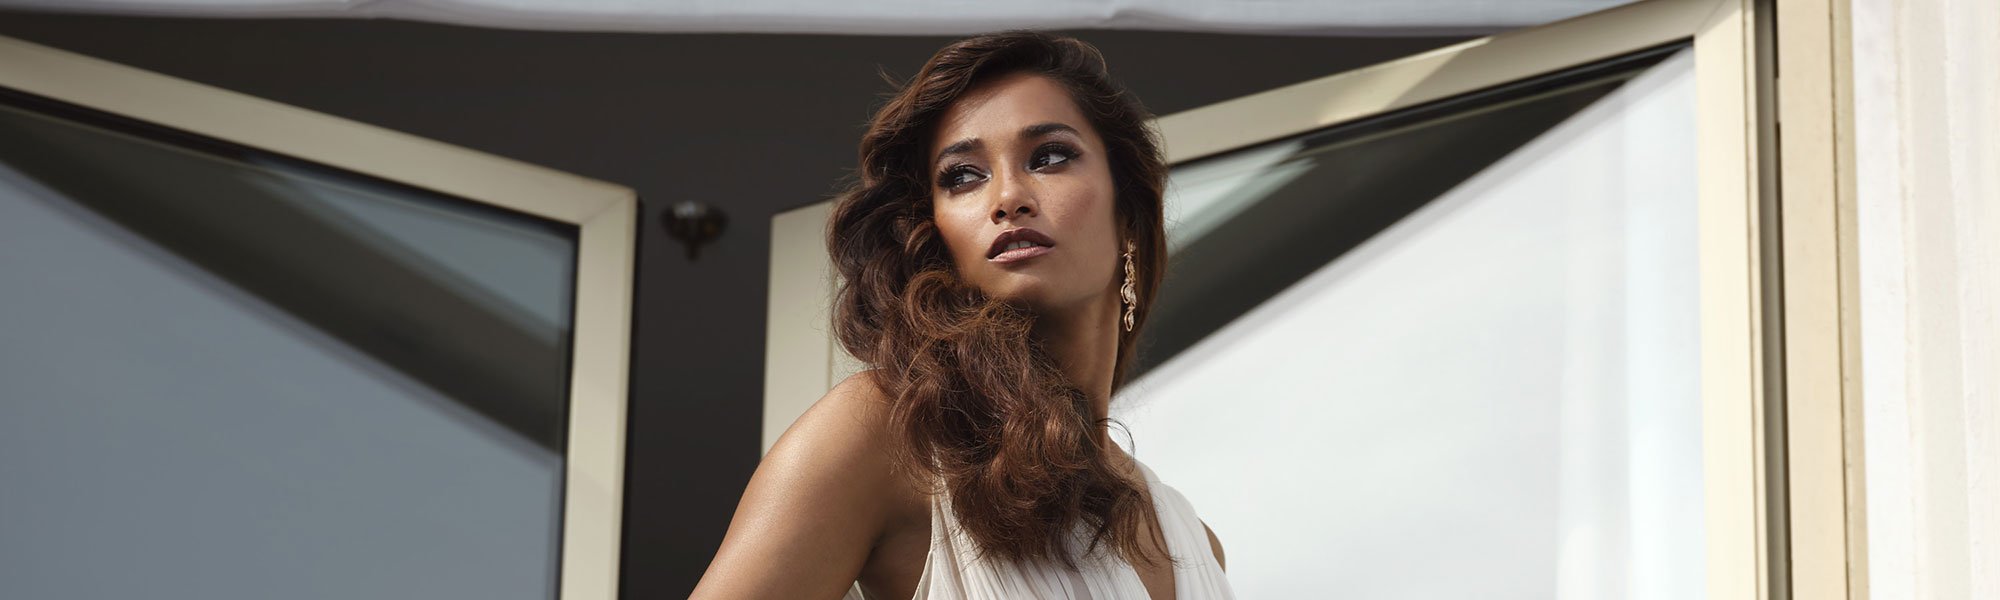 Replica los maquillajes más impresionantes que nos ha dejado Cannes 2021 —¿te gusta este de Nidhi Sunil?—con los distintos productos makeup de L’Oréal Paris. 